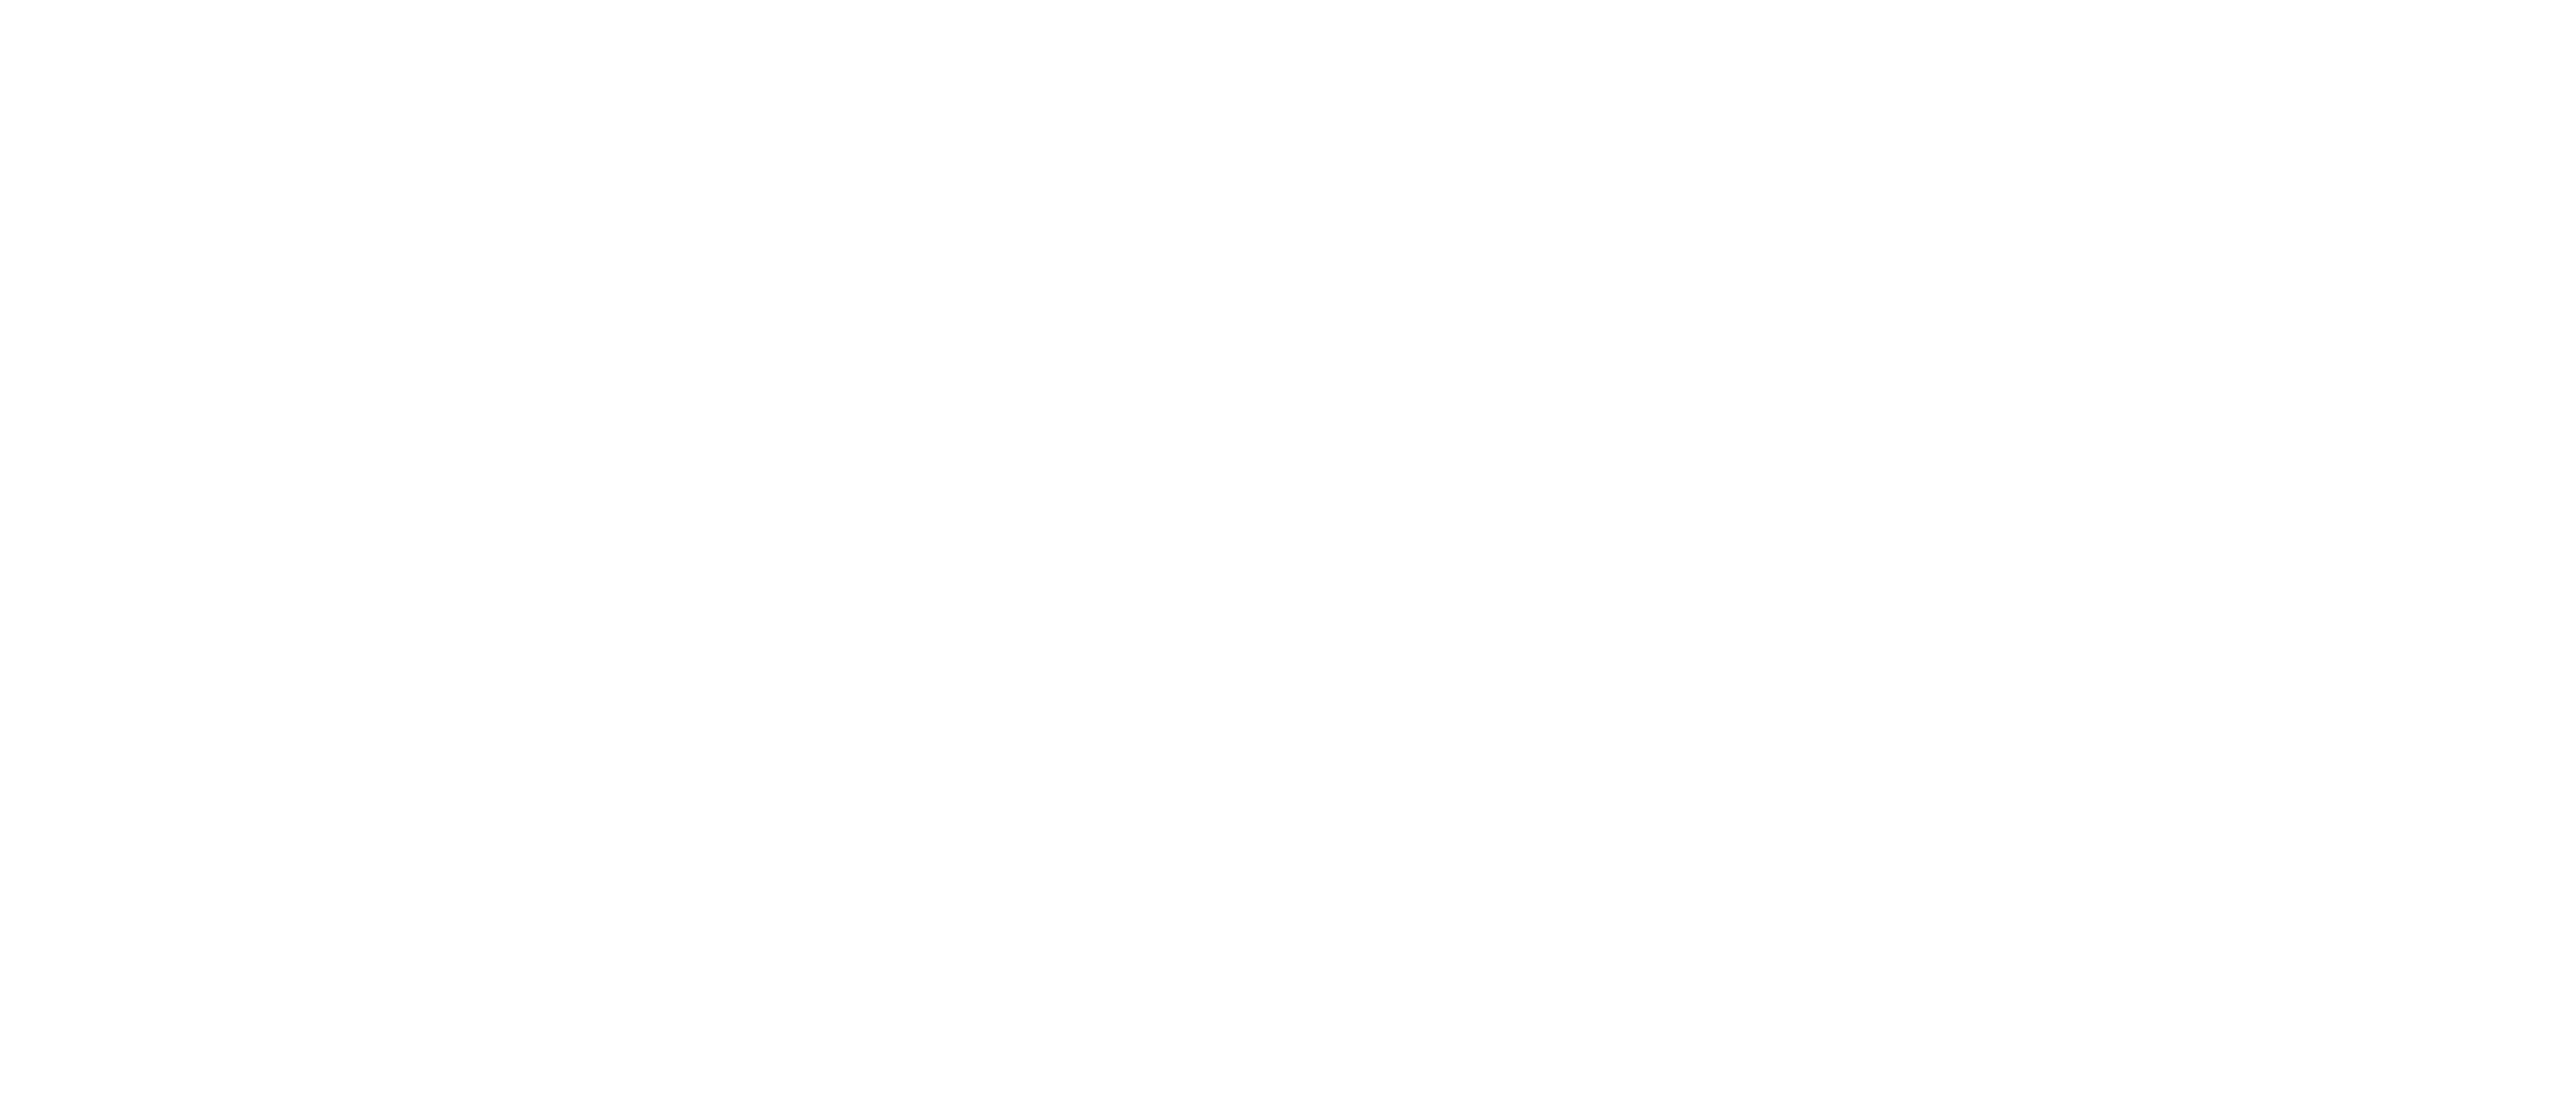 No Sleep 'Til Christmas logo